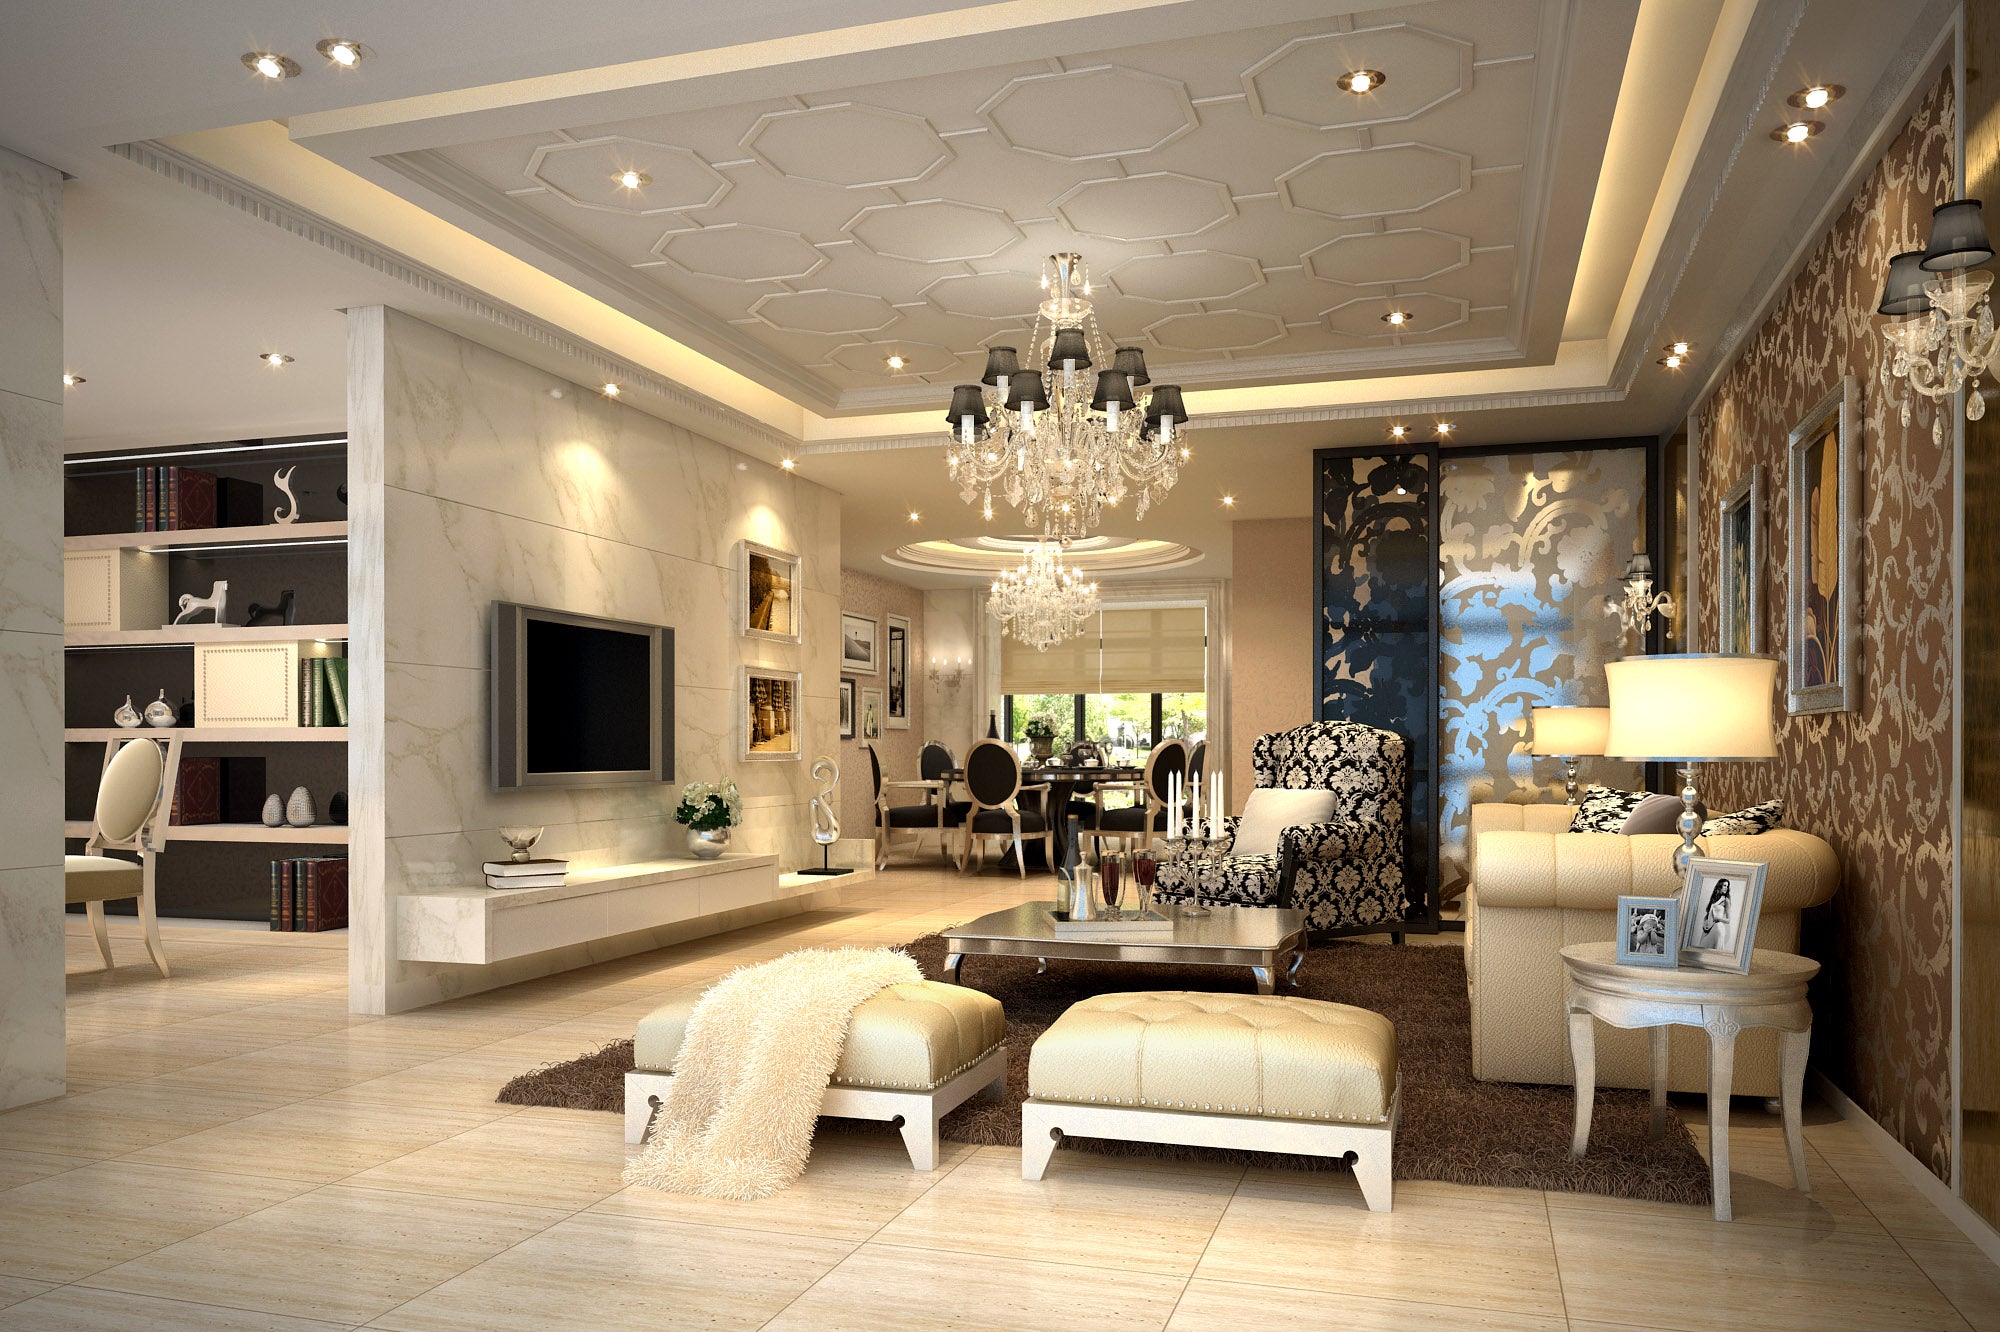 Download 3d Max Decoration Models Living Room V 1